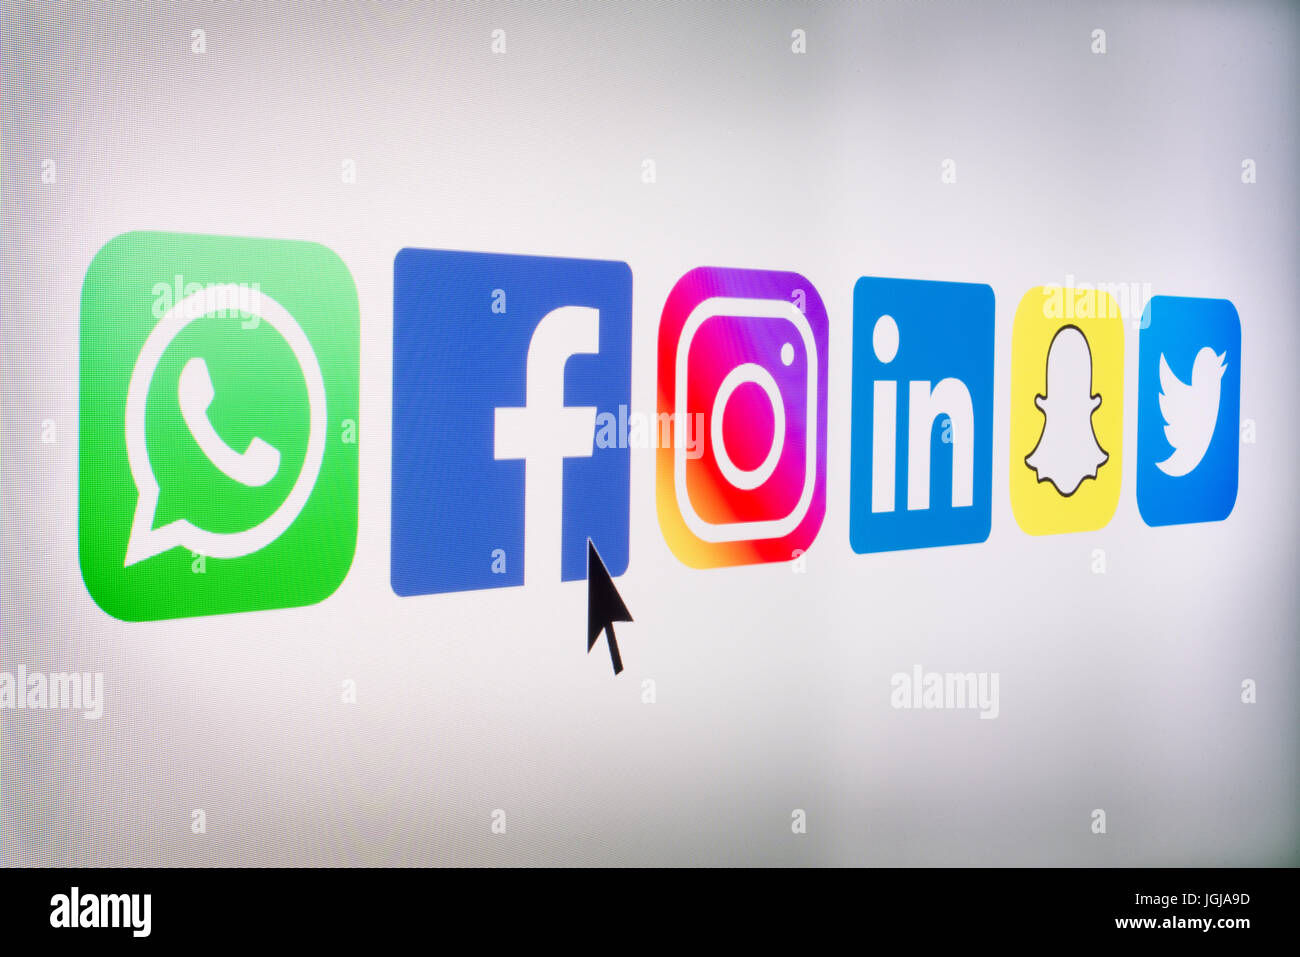 Los medios de comunicación social App logos en la pantalla de ordenador Foto de stock